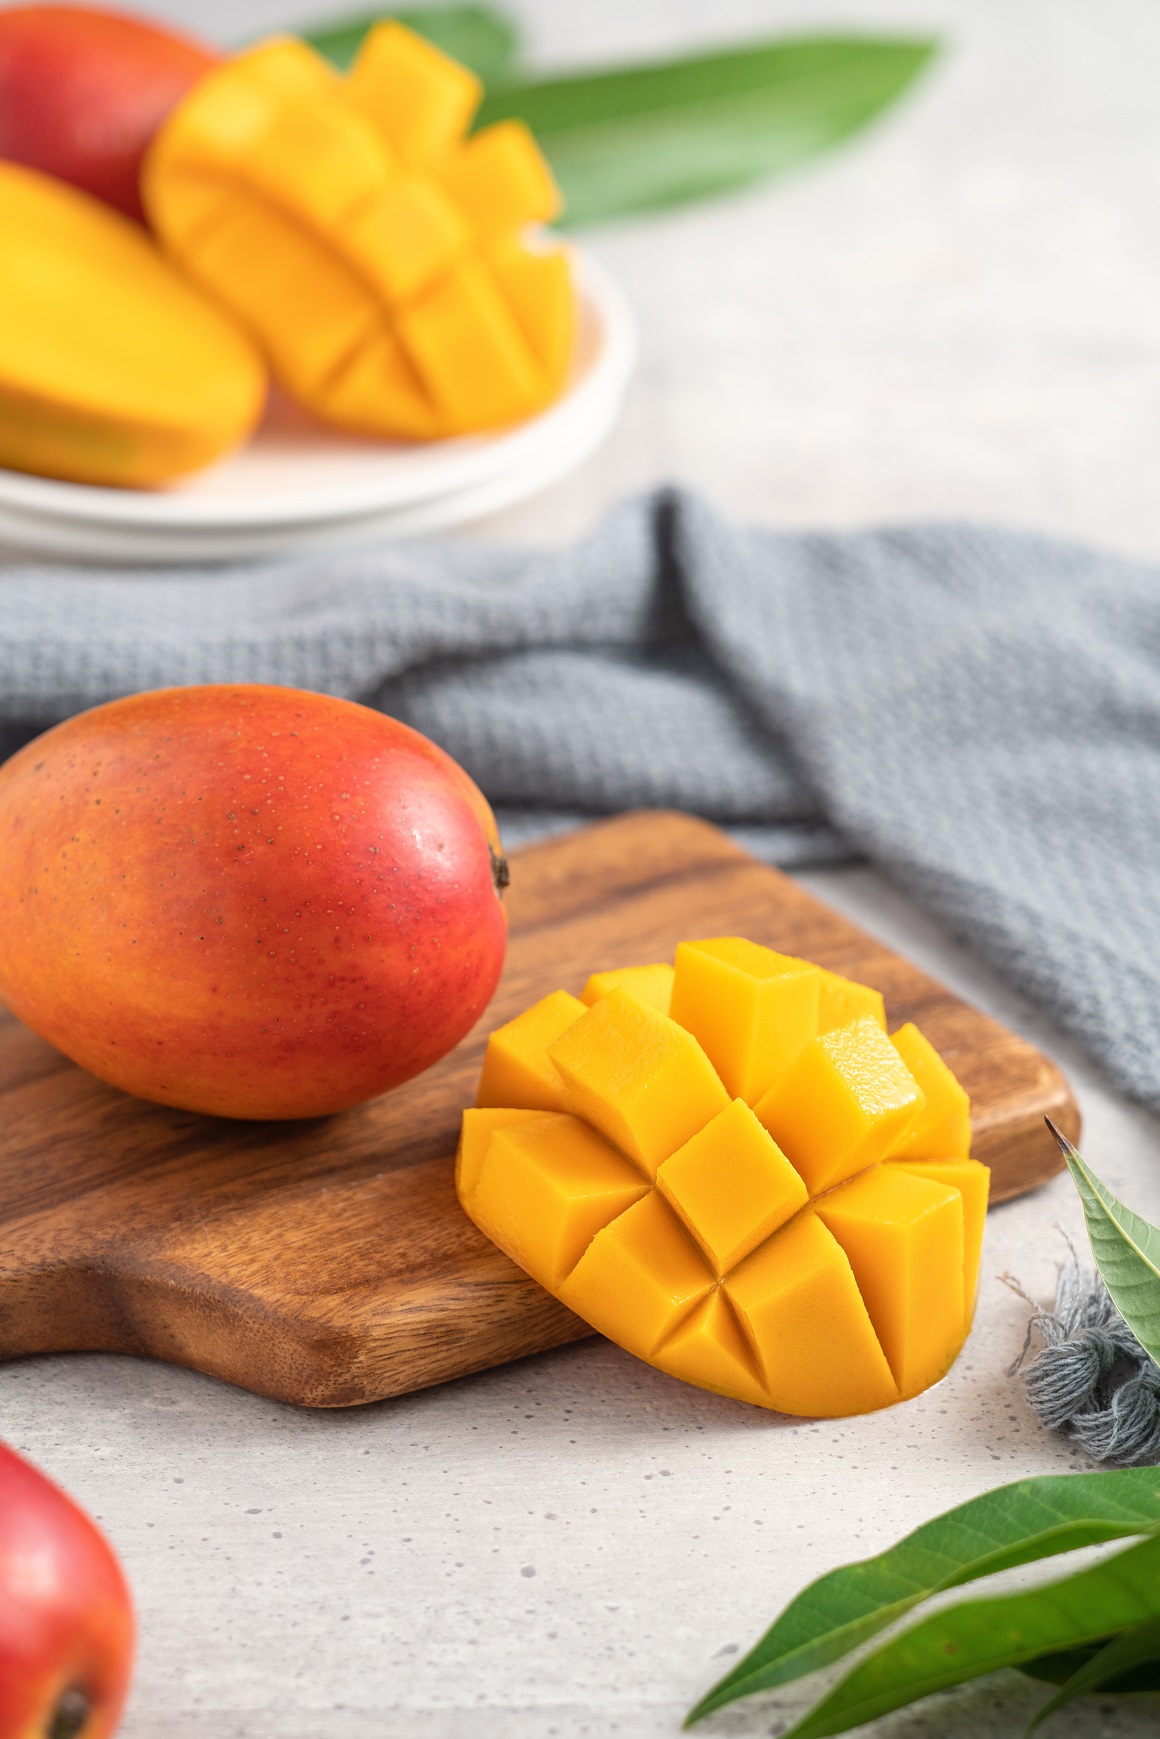 kako jesti mango